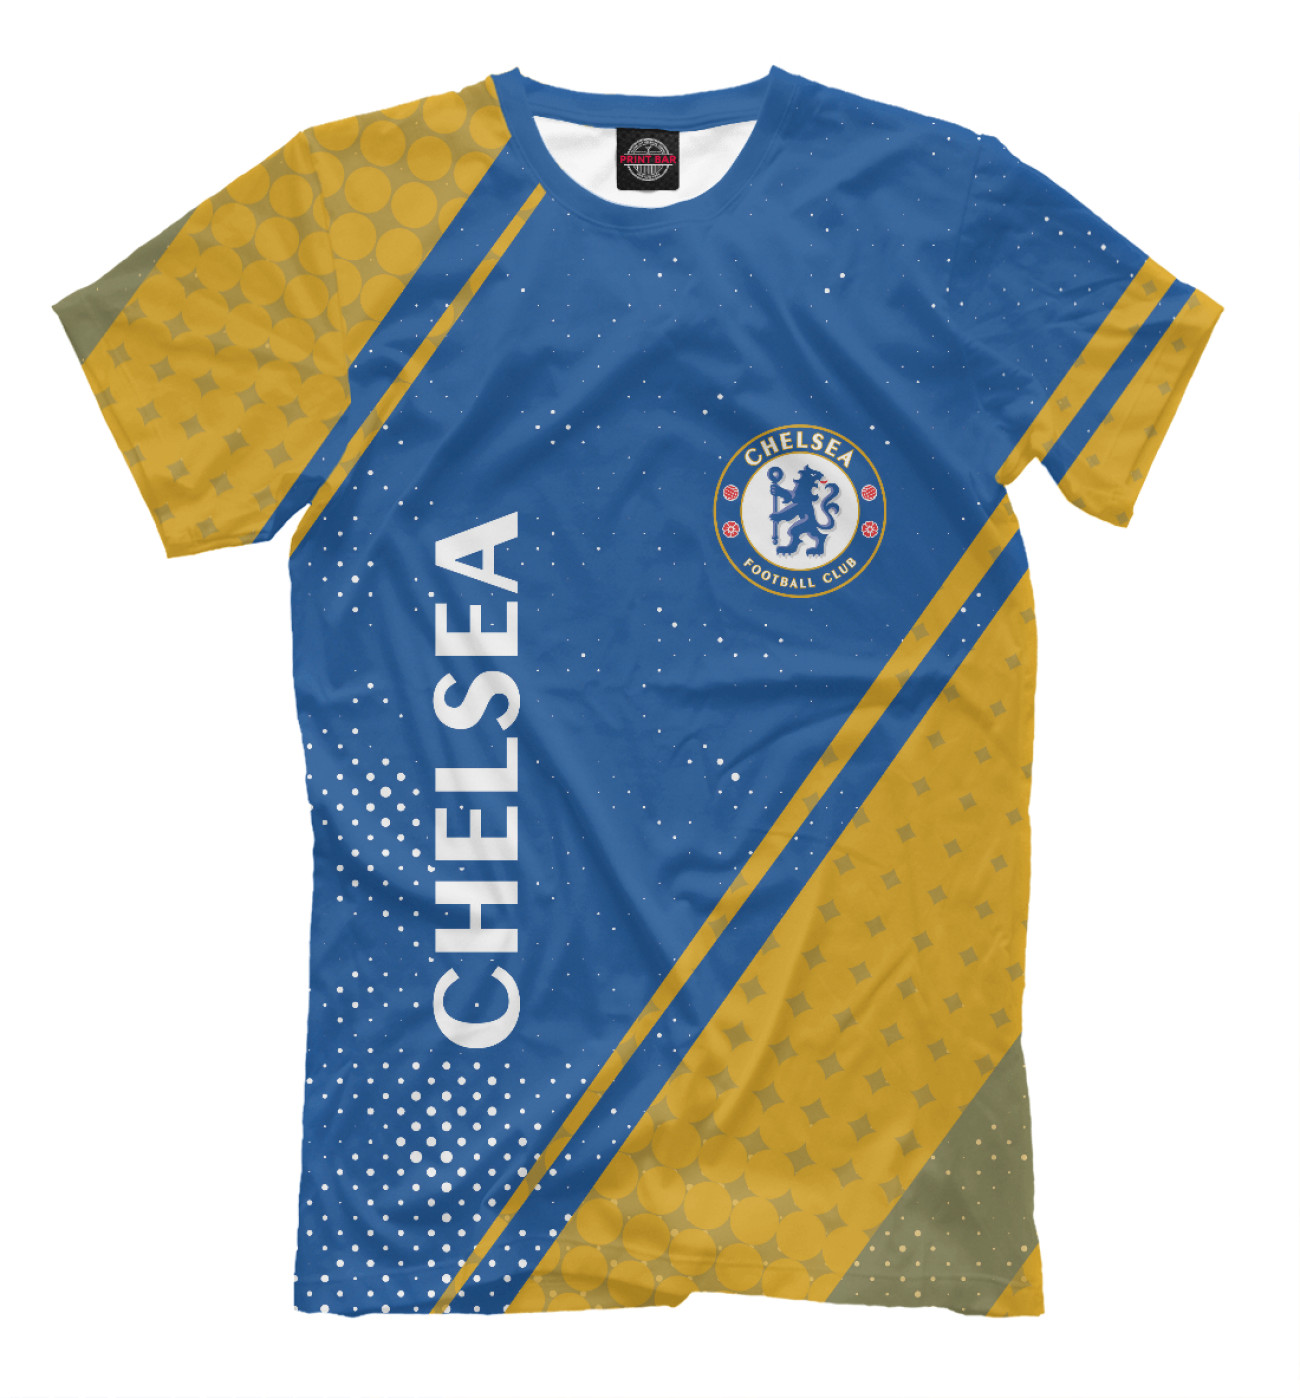 Мужская Футболка Chelsea F.C. / Челси, артикул: CHL-517833-fut-2